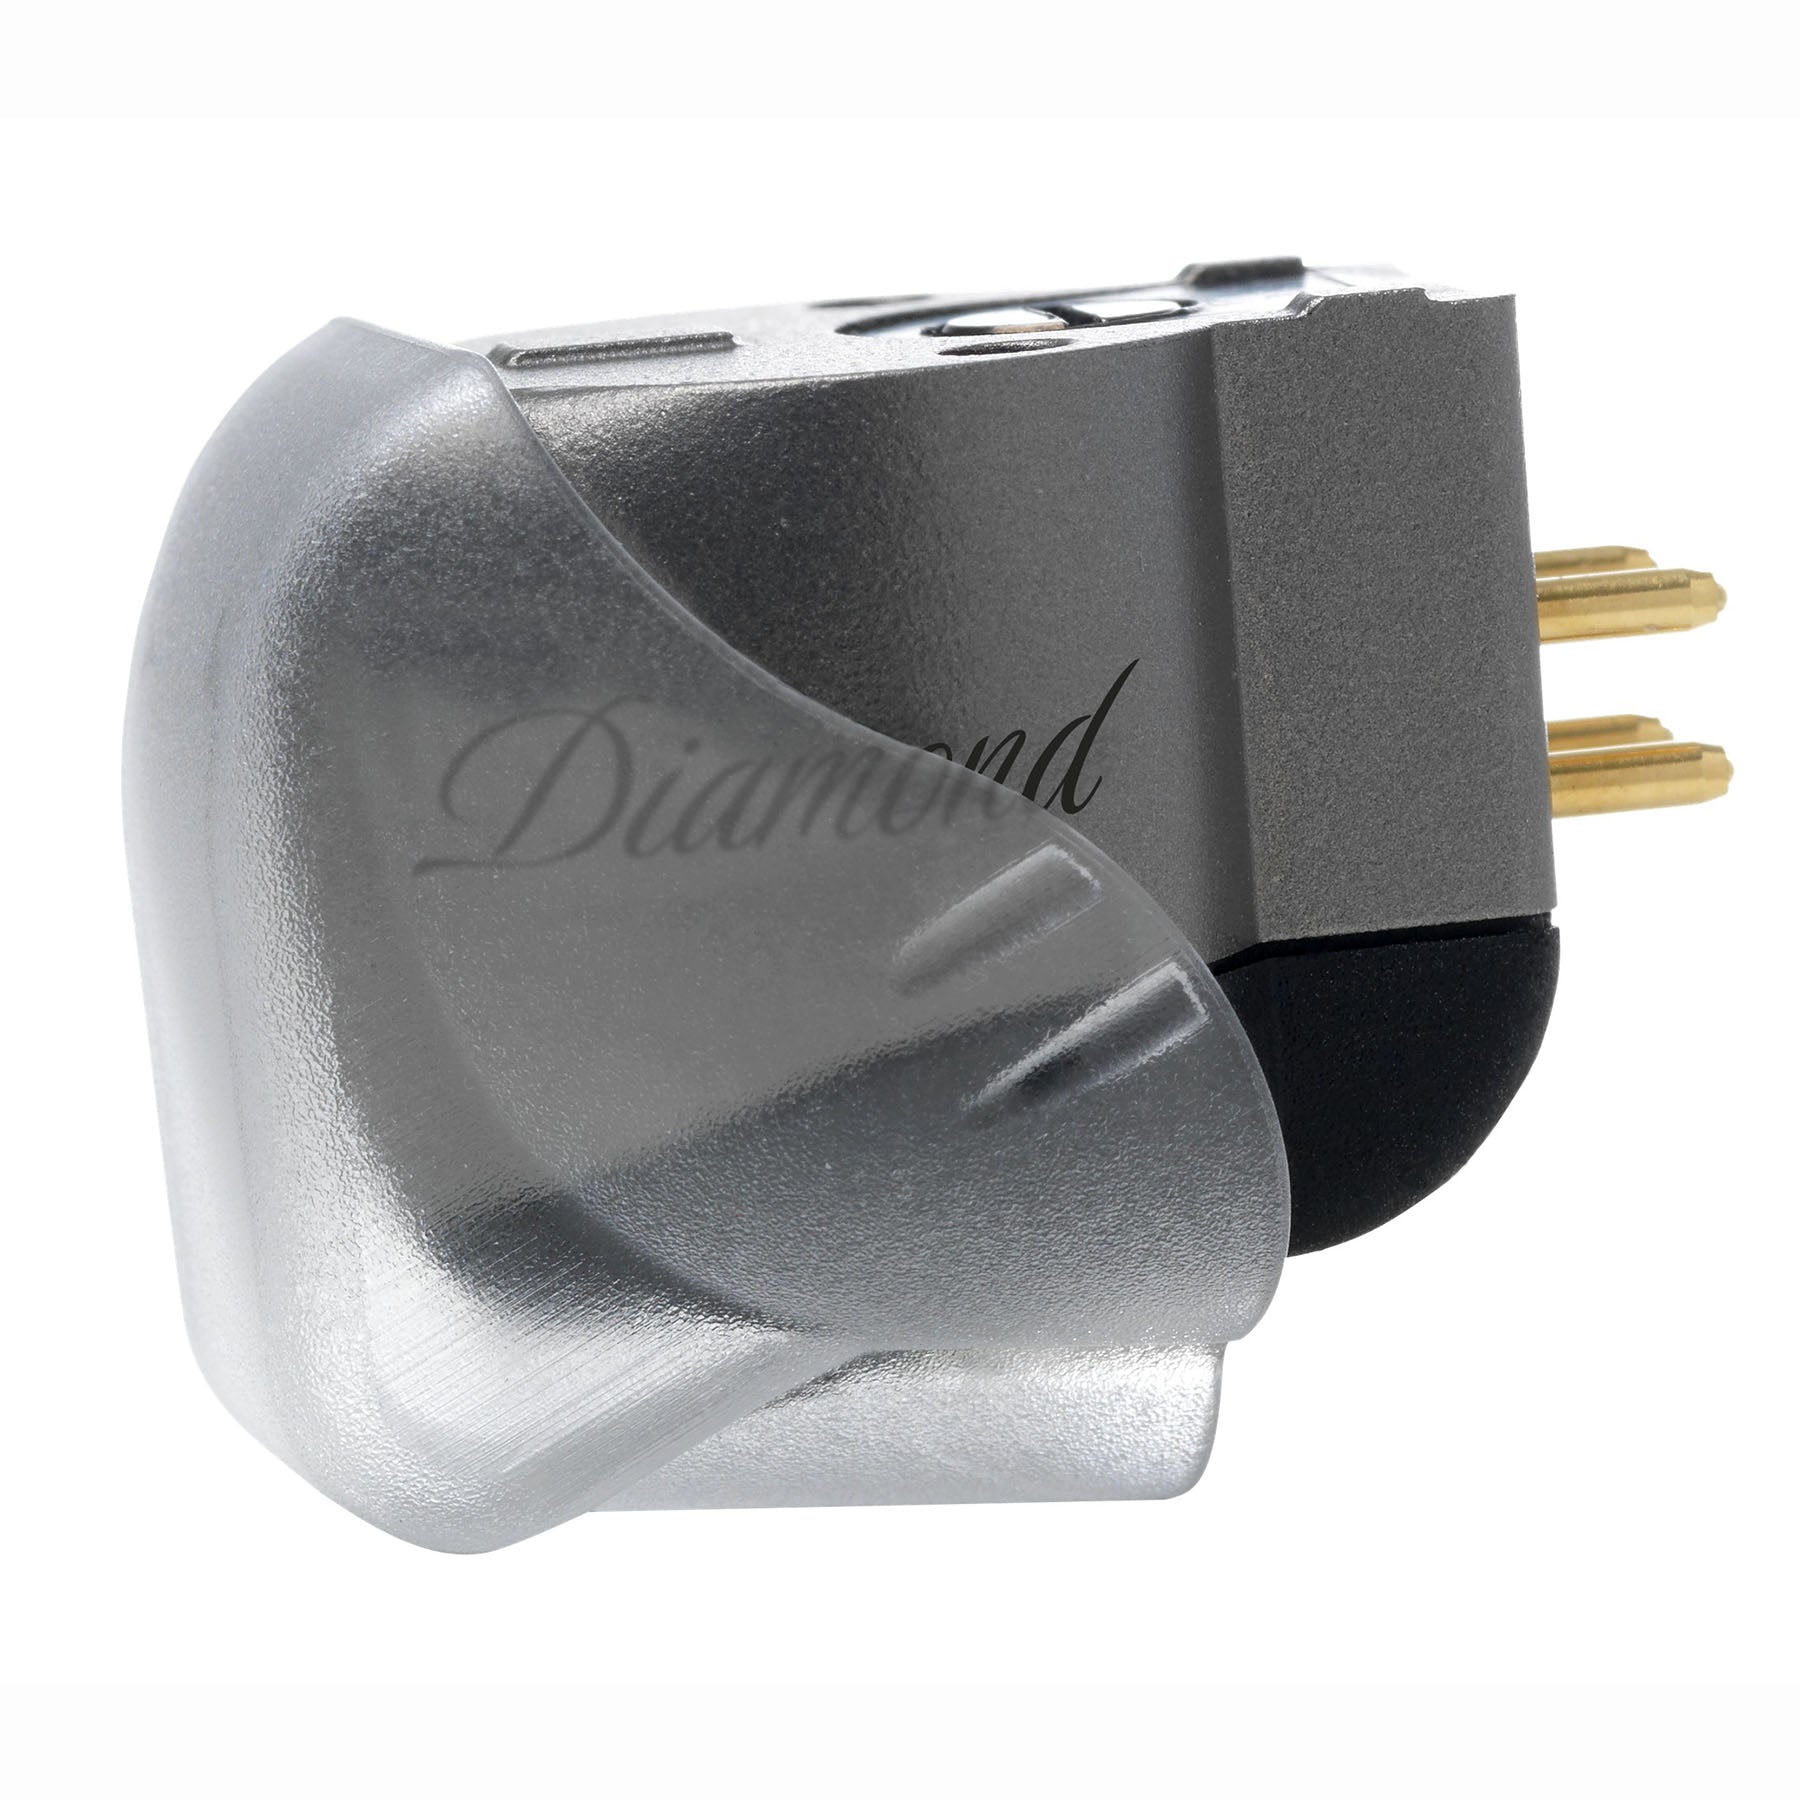 Ortofon Hi-Fi MC Diamond Moving Coil Cartridge